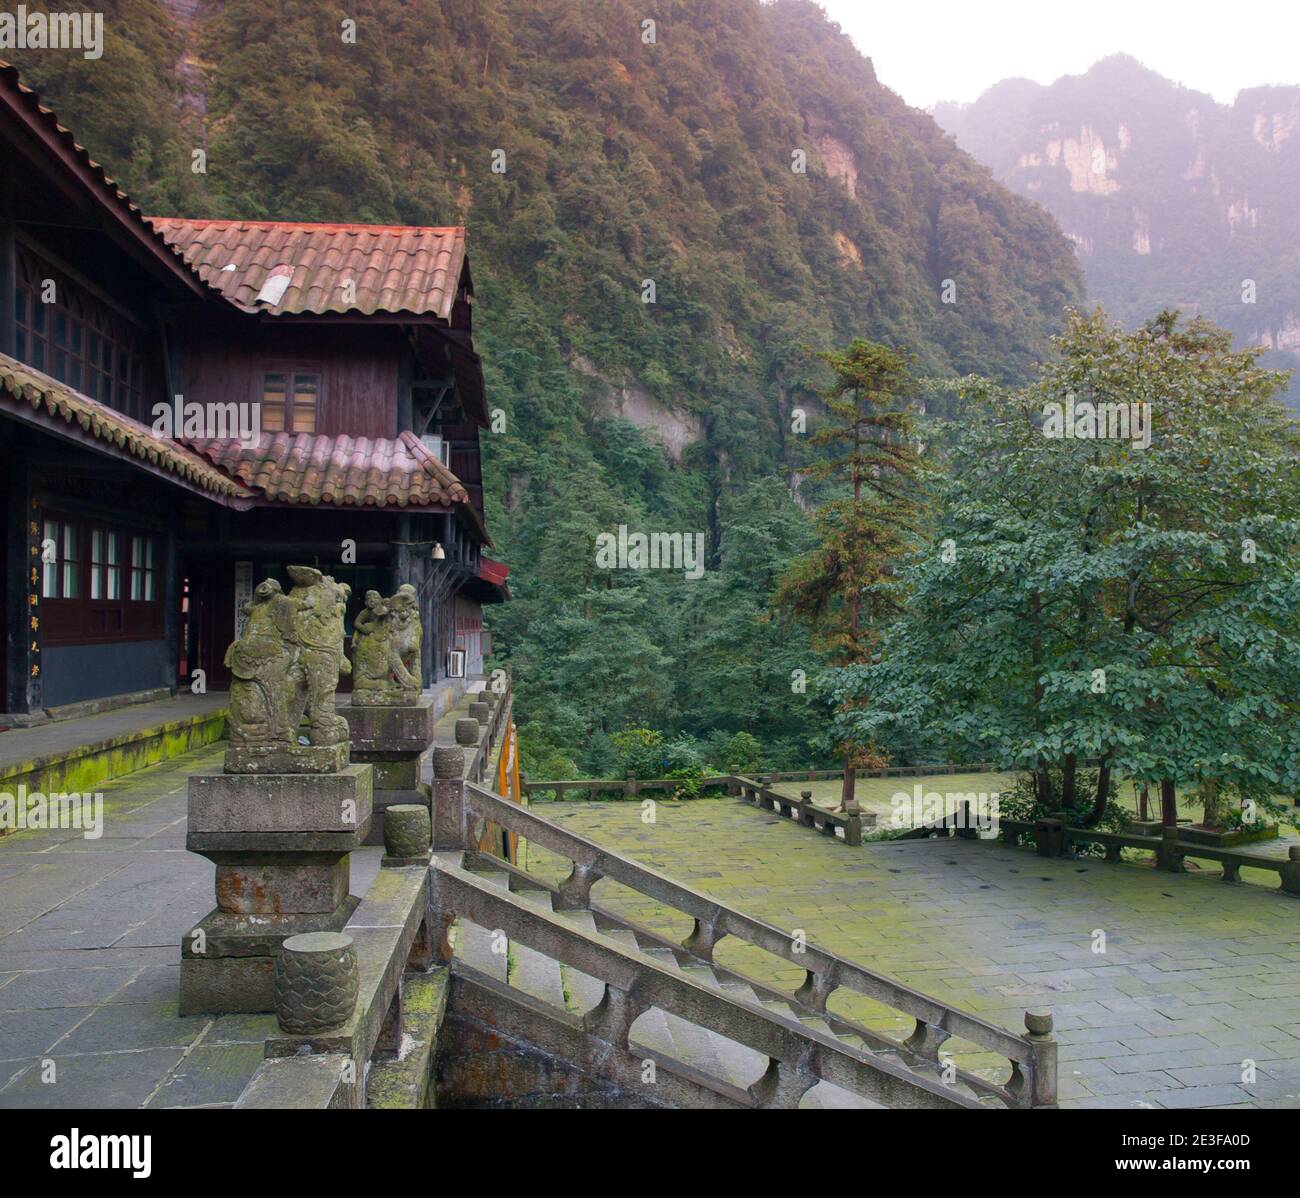 Xianfeng Temple on the way to Mount Emei, Sichuan, China Stock Photo